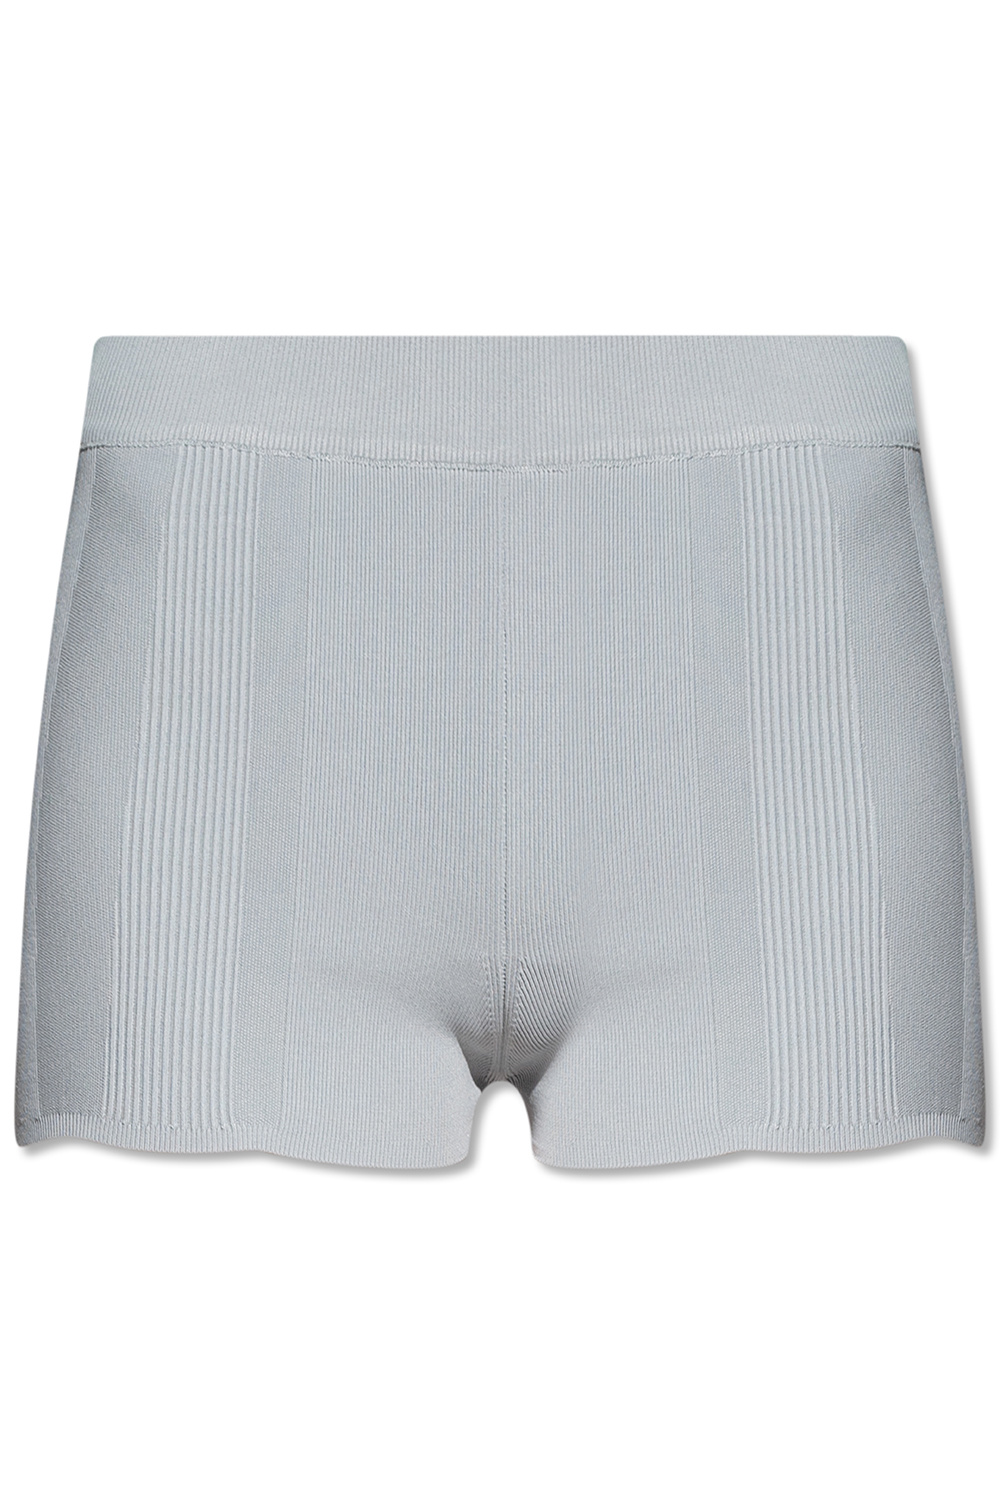 Jacquemus Ribbed shorts